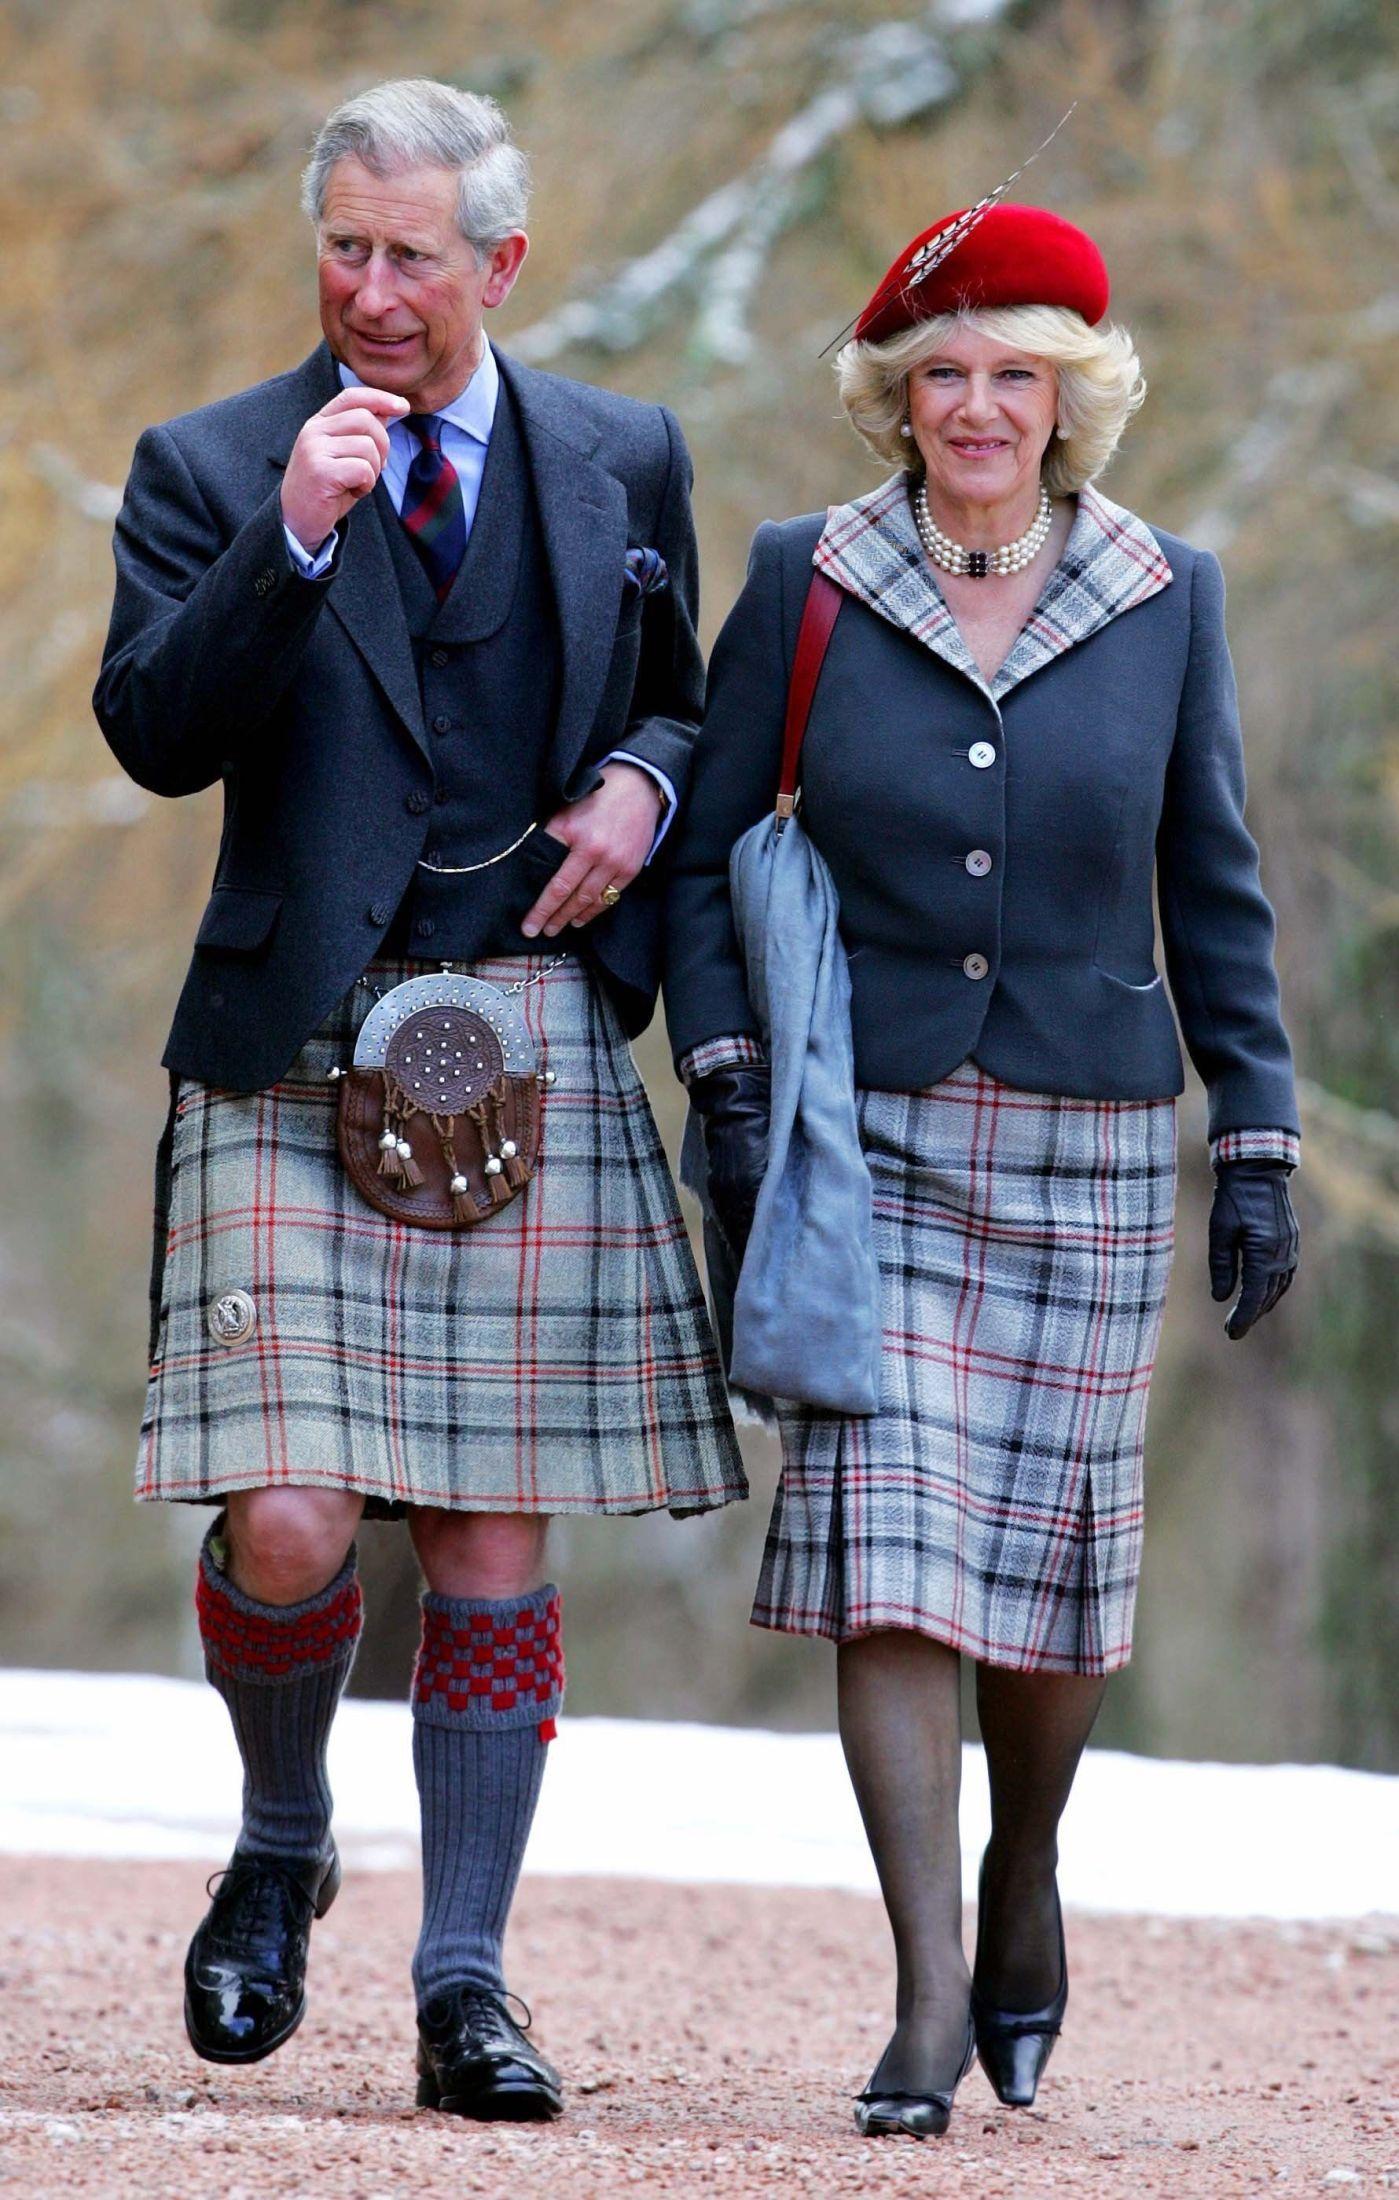 LIKER KILT: Prins Charles sammen med sin kone hertuginne Camilla i Skottland i 2006. Prinsen bruker ofte kilten til offisielle anledninger i Skottland. Foto: Gordon Jack/Reuters.